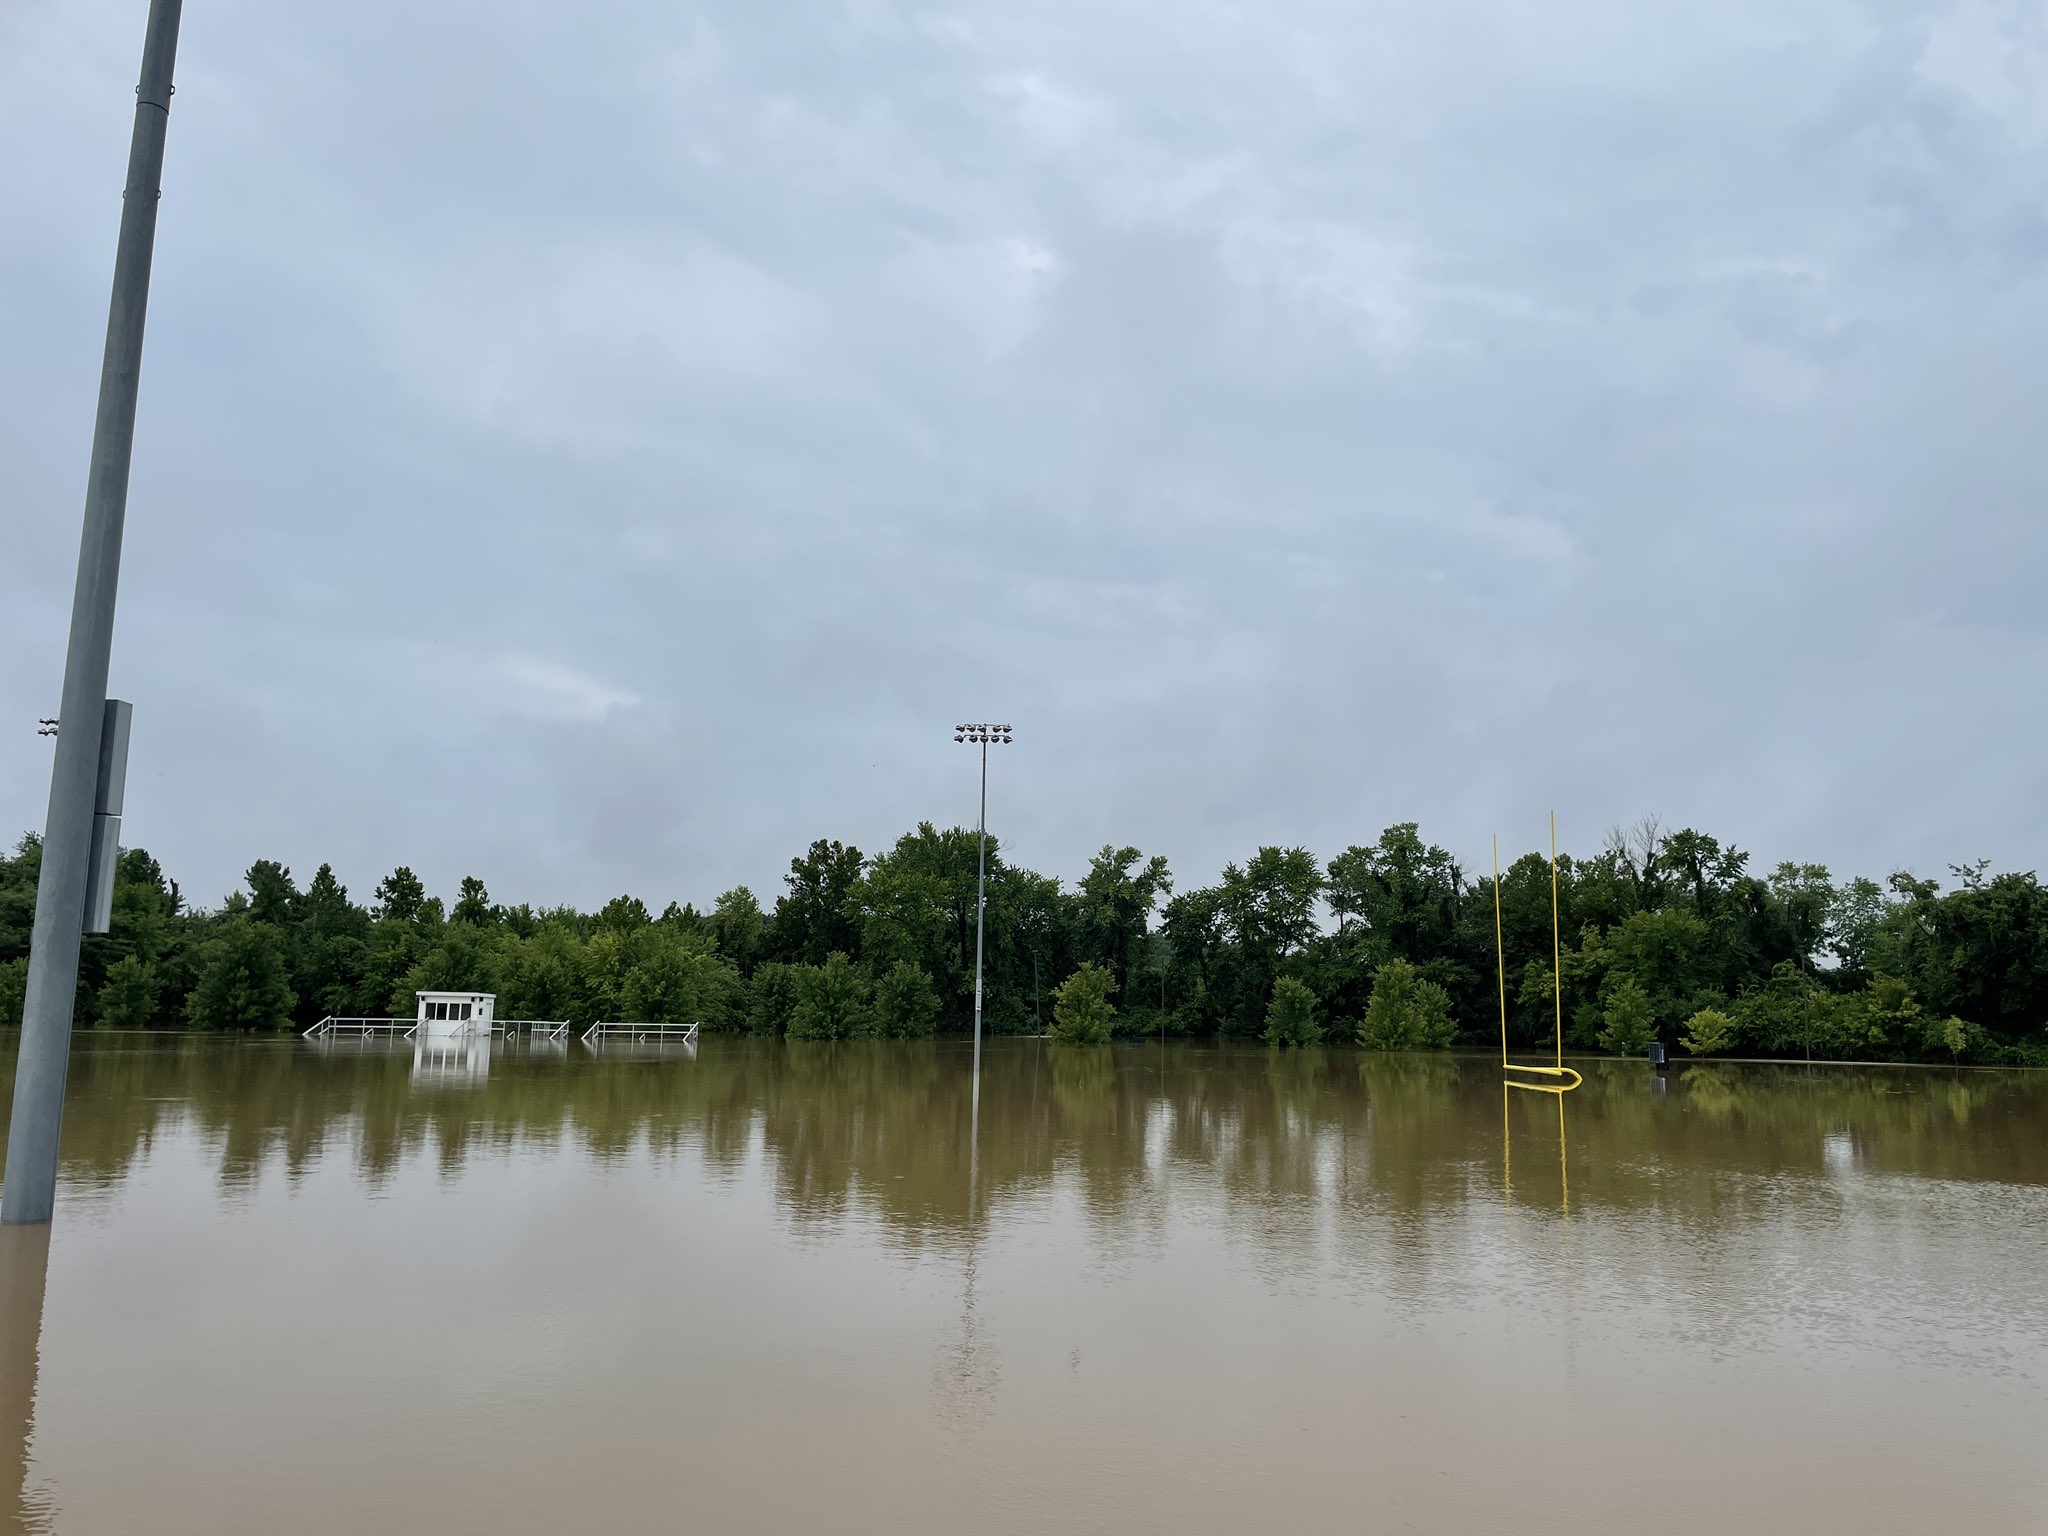 Flooding at Dames Park in O'Fallon, MO.